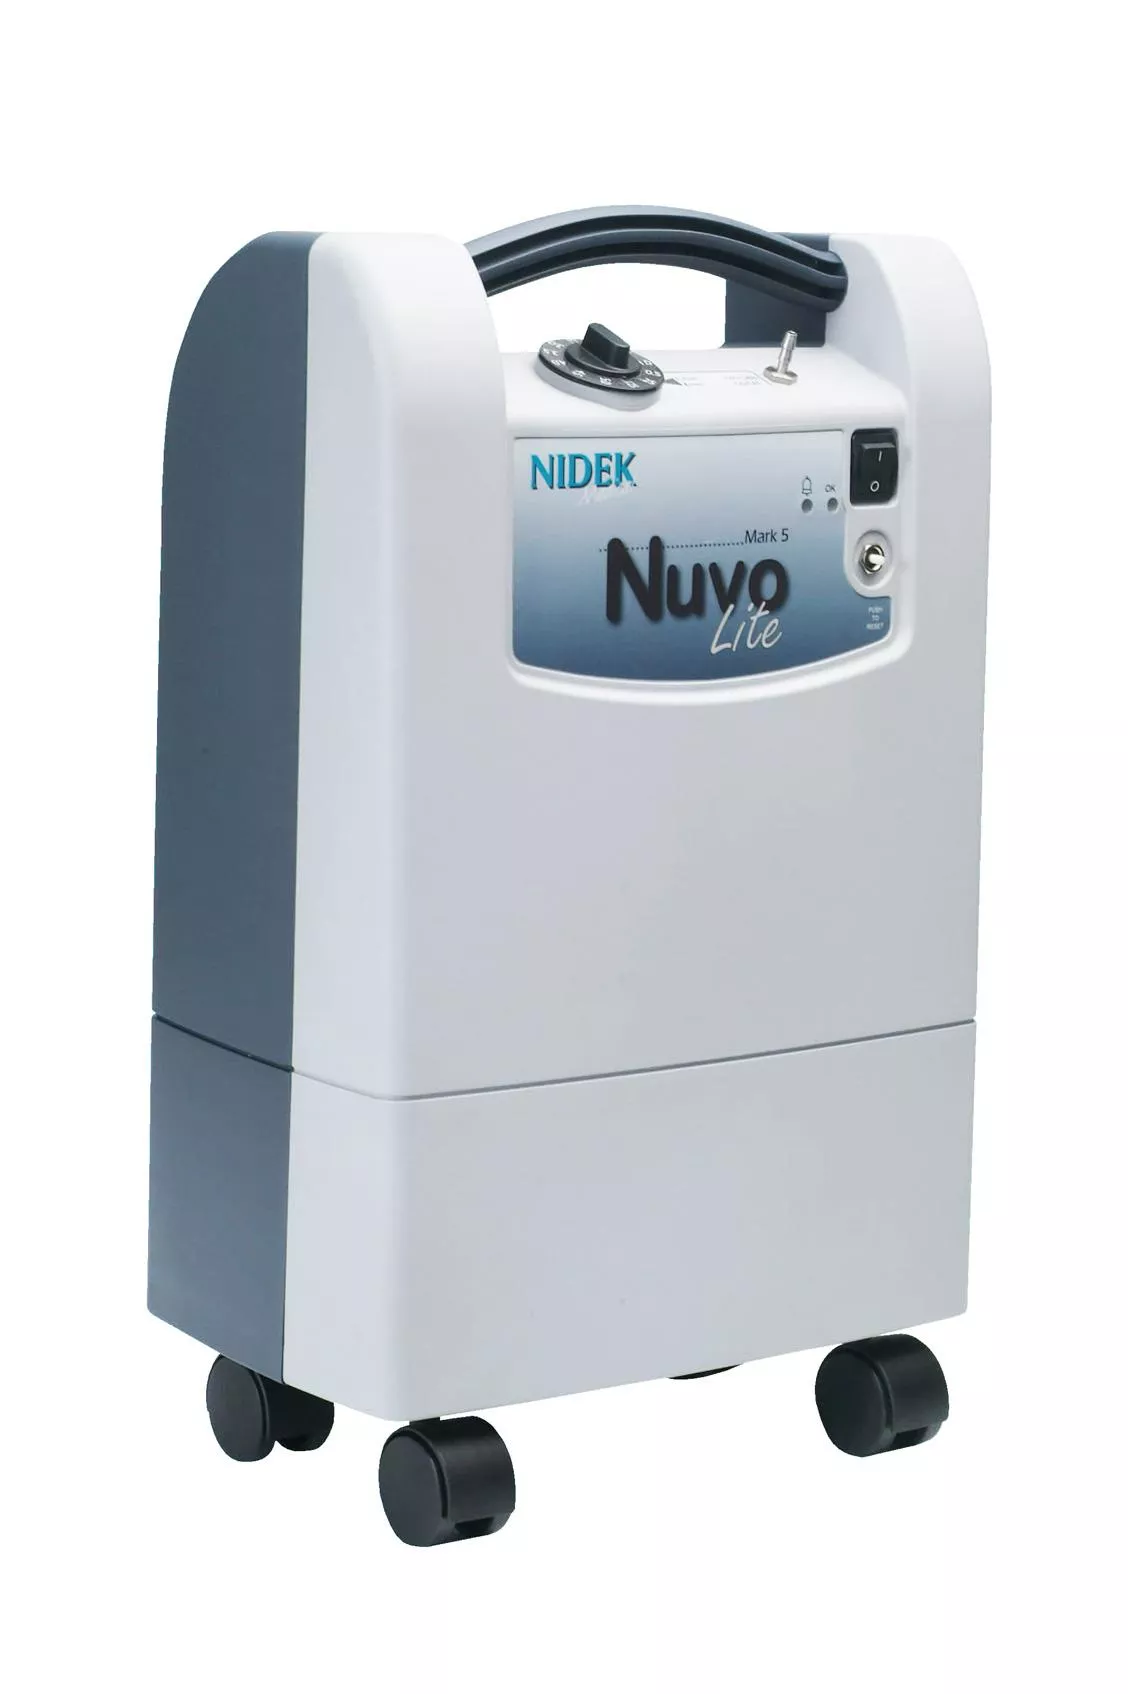 氧氣製造機 氧氣機 天慶 耐德克 NIDEK Nuvo Lite Q(5公升靜音型) 製氧機